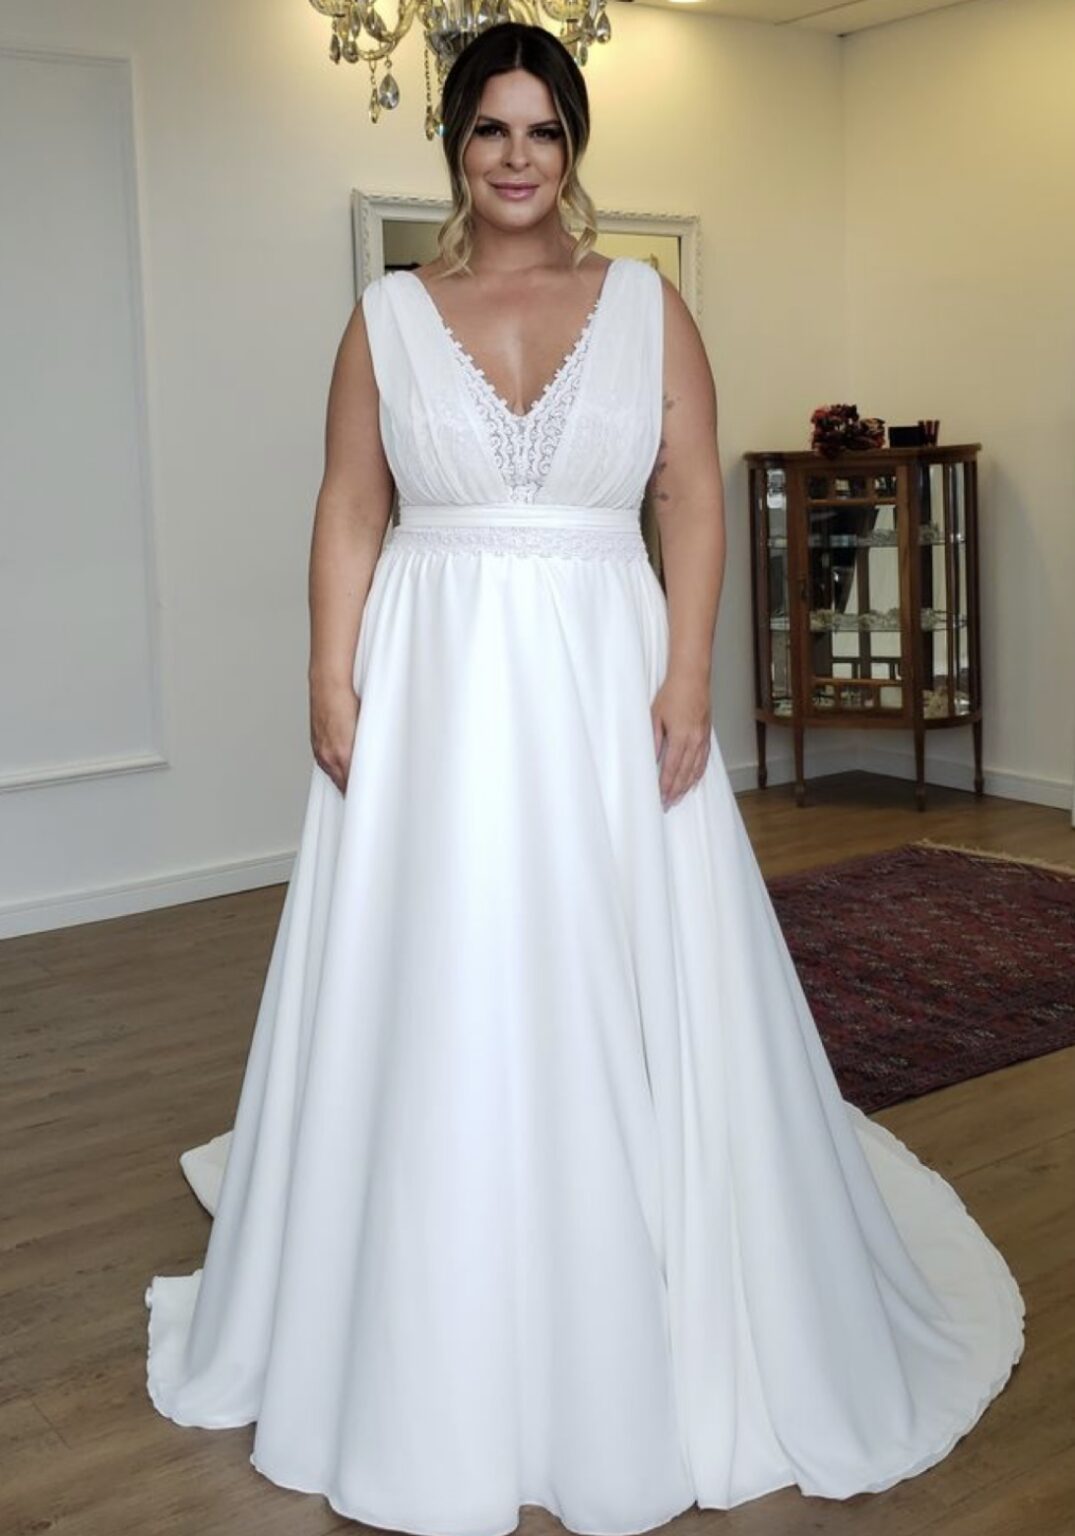 Wedding Dresses For Plus Size Brides 1075x1536 